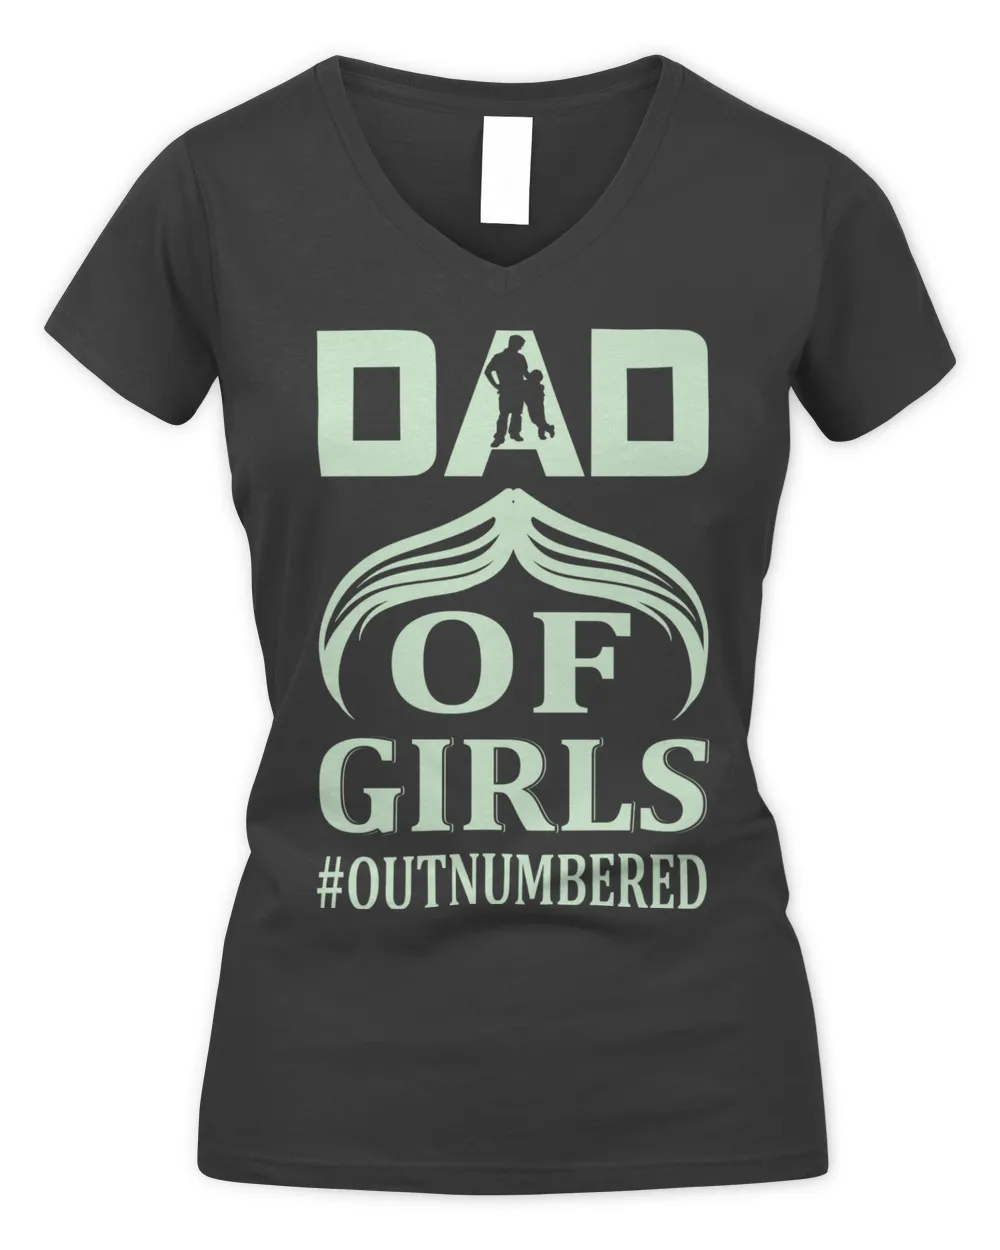 Father's Day Gifts, Father's Day Shirts, Father's Day Gift Ideas, Father's Day Gifts 2022, Gifts for Dad (73)